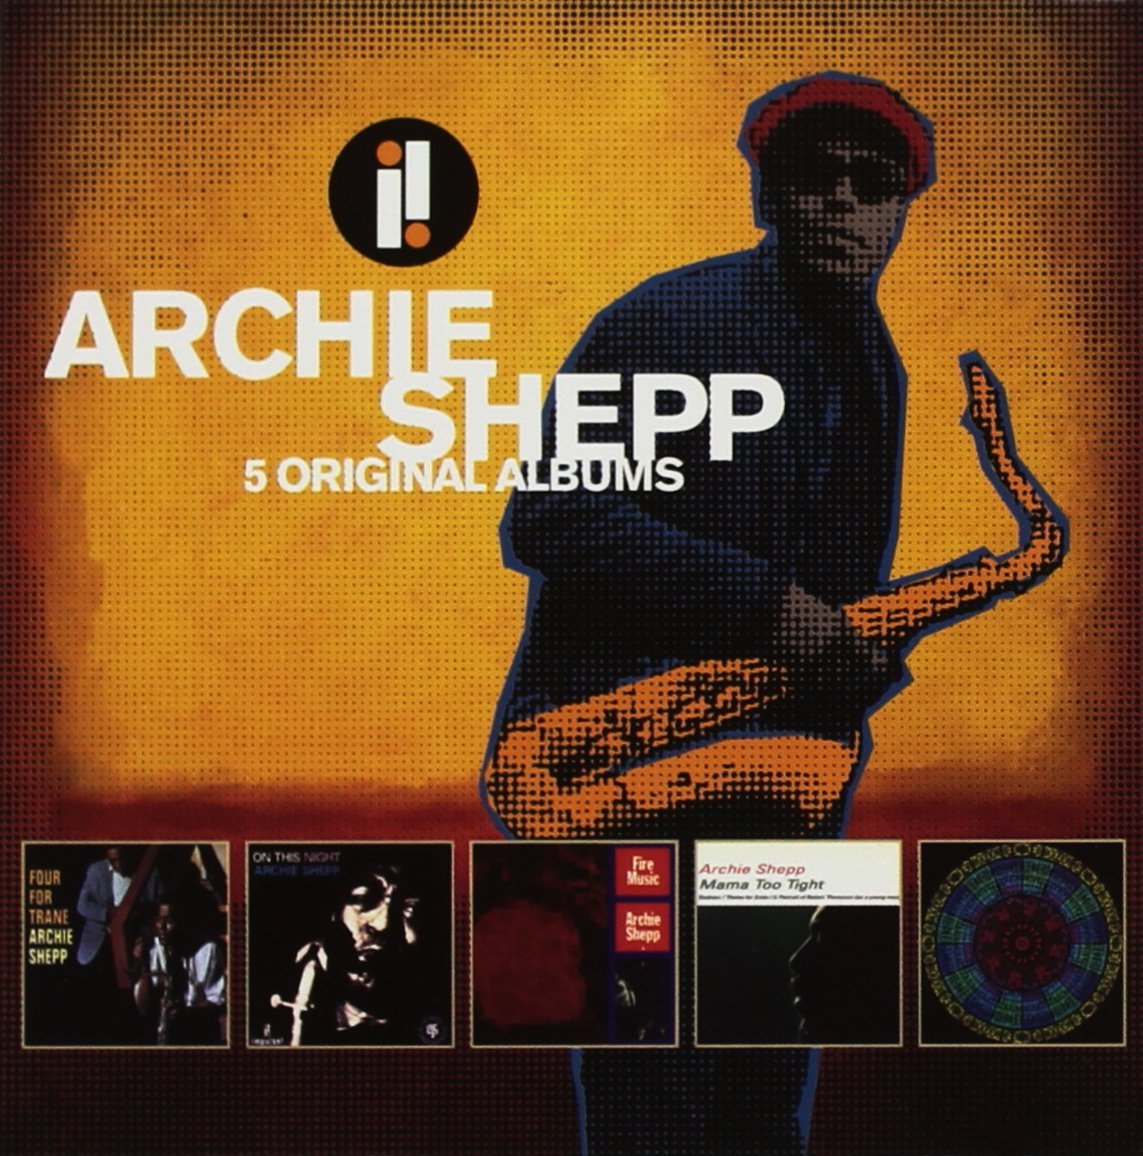 ARCHIE SHEPP - 5 Original Albums cover 